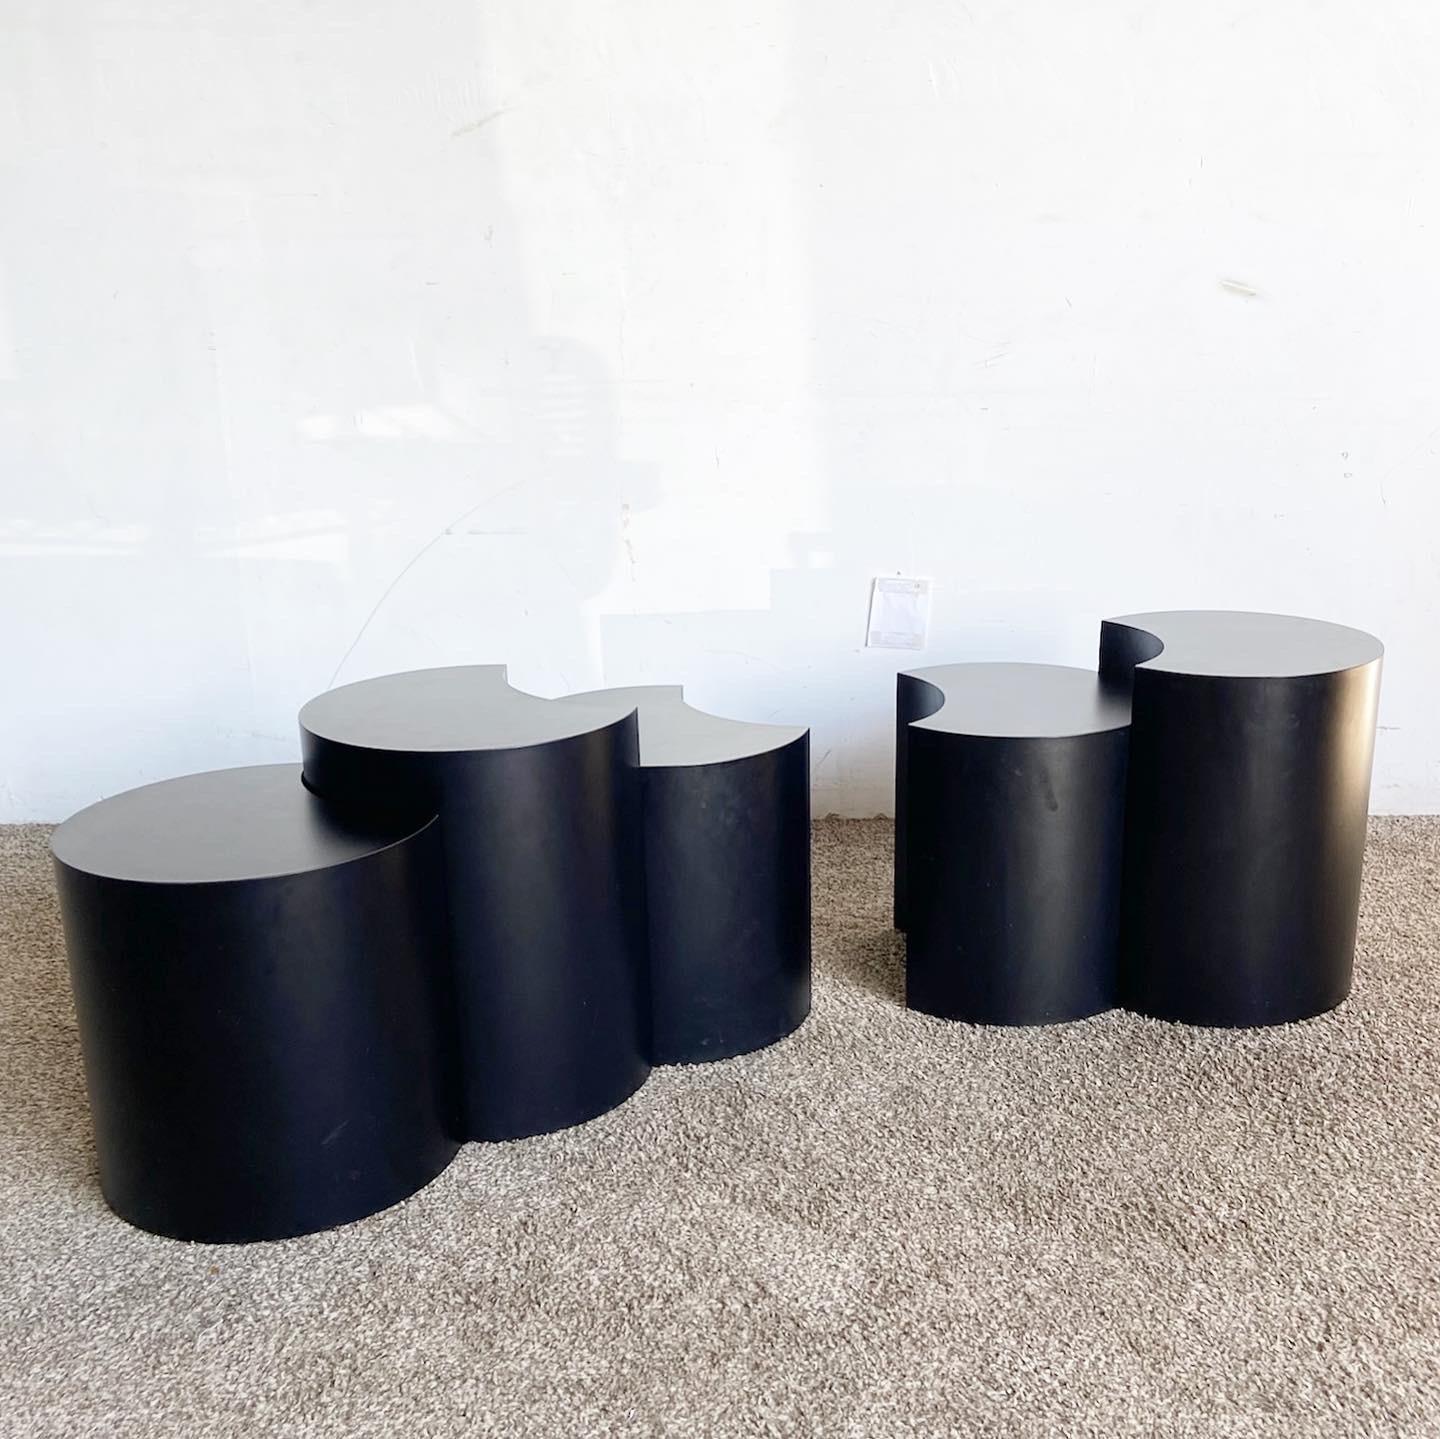 Verwandeln Sie Ihren Wohnbereich mit diesem Set aus 5 Postmodern Crescent Black Laminate Nesting Tables. Mit ihrem modularen Design und der eleganten schwarzen Laminatoberfläche sind diese Tische sowohl praktisch als auch stilvoll und passen perfekt